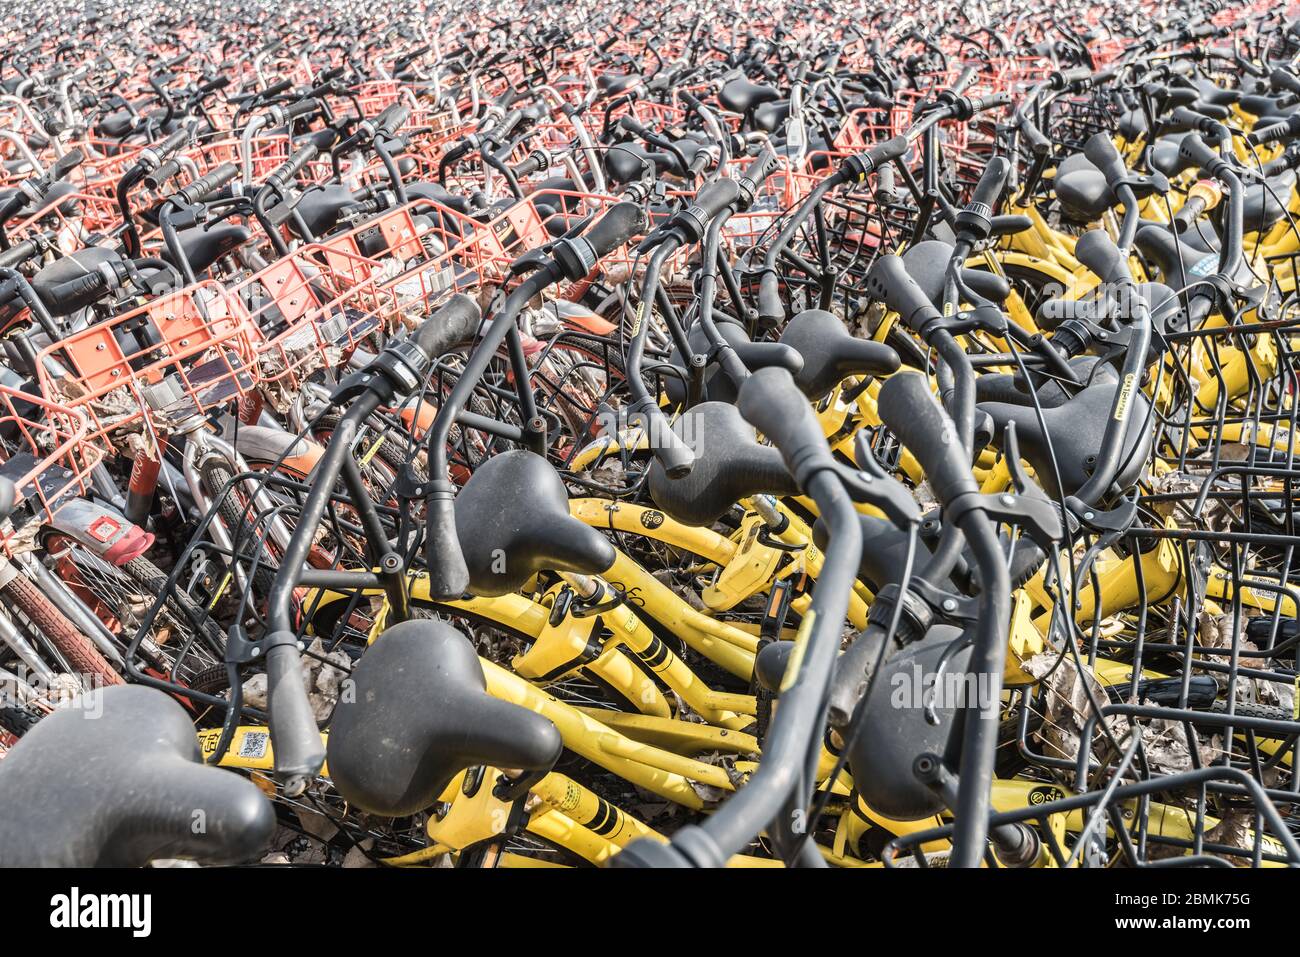 Shanghai, China - 26. Februar 2018: Die Fülle von Gemeinschaftsfahrrädern wirrelt auf einem Parkplatz Stockfoto